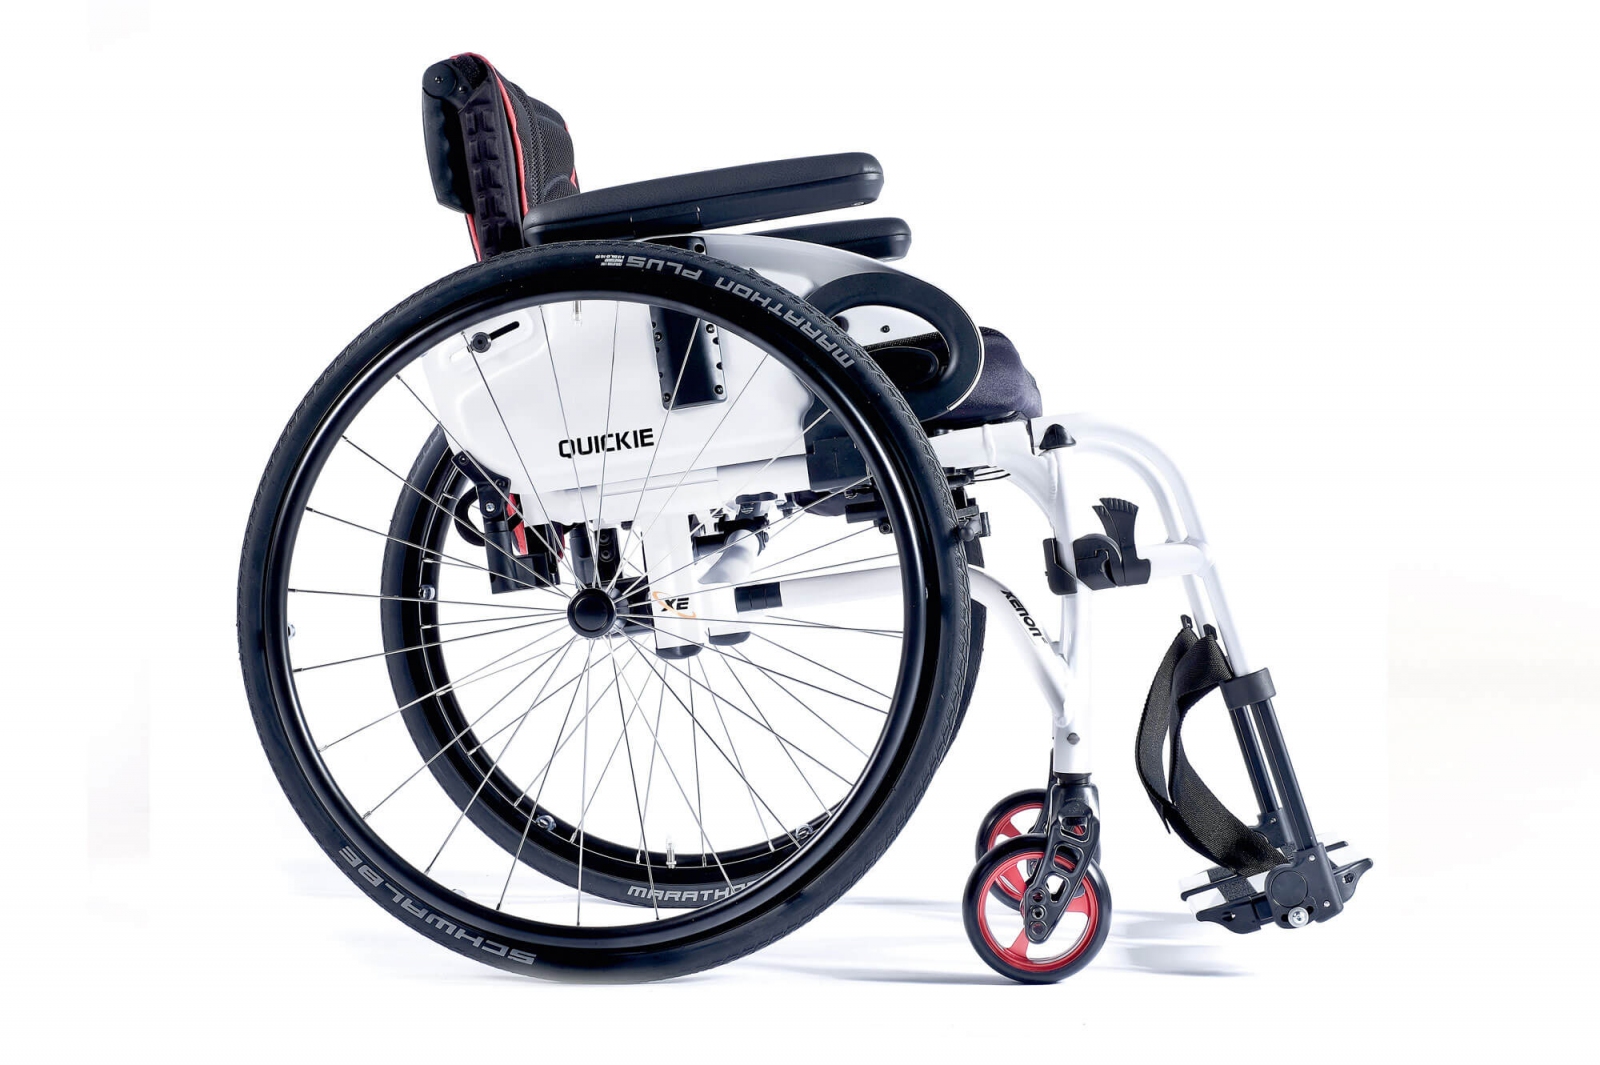 Wózek inwalidzki Xenon2 SA